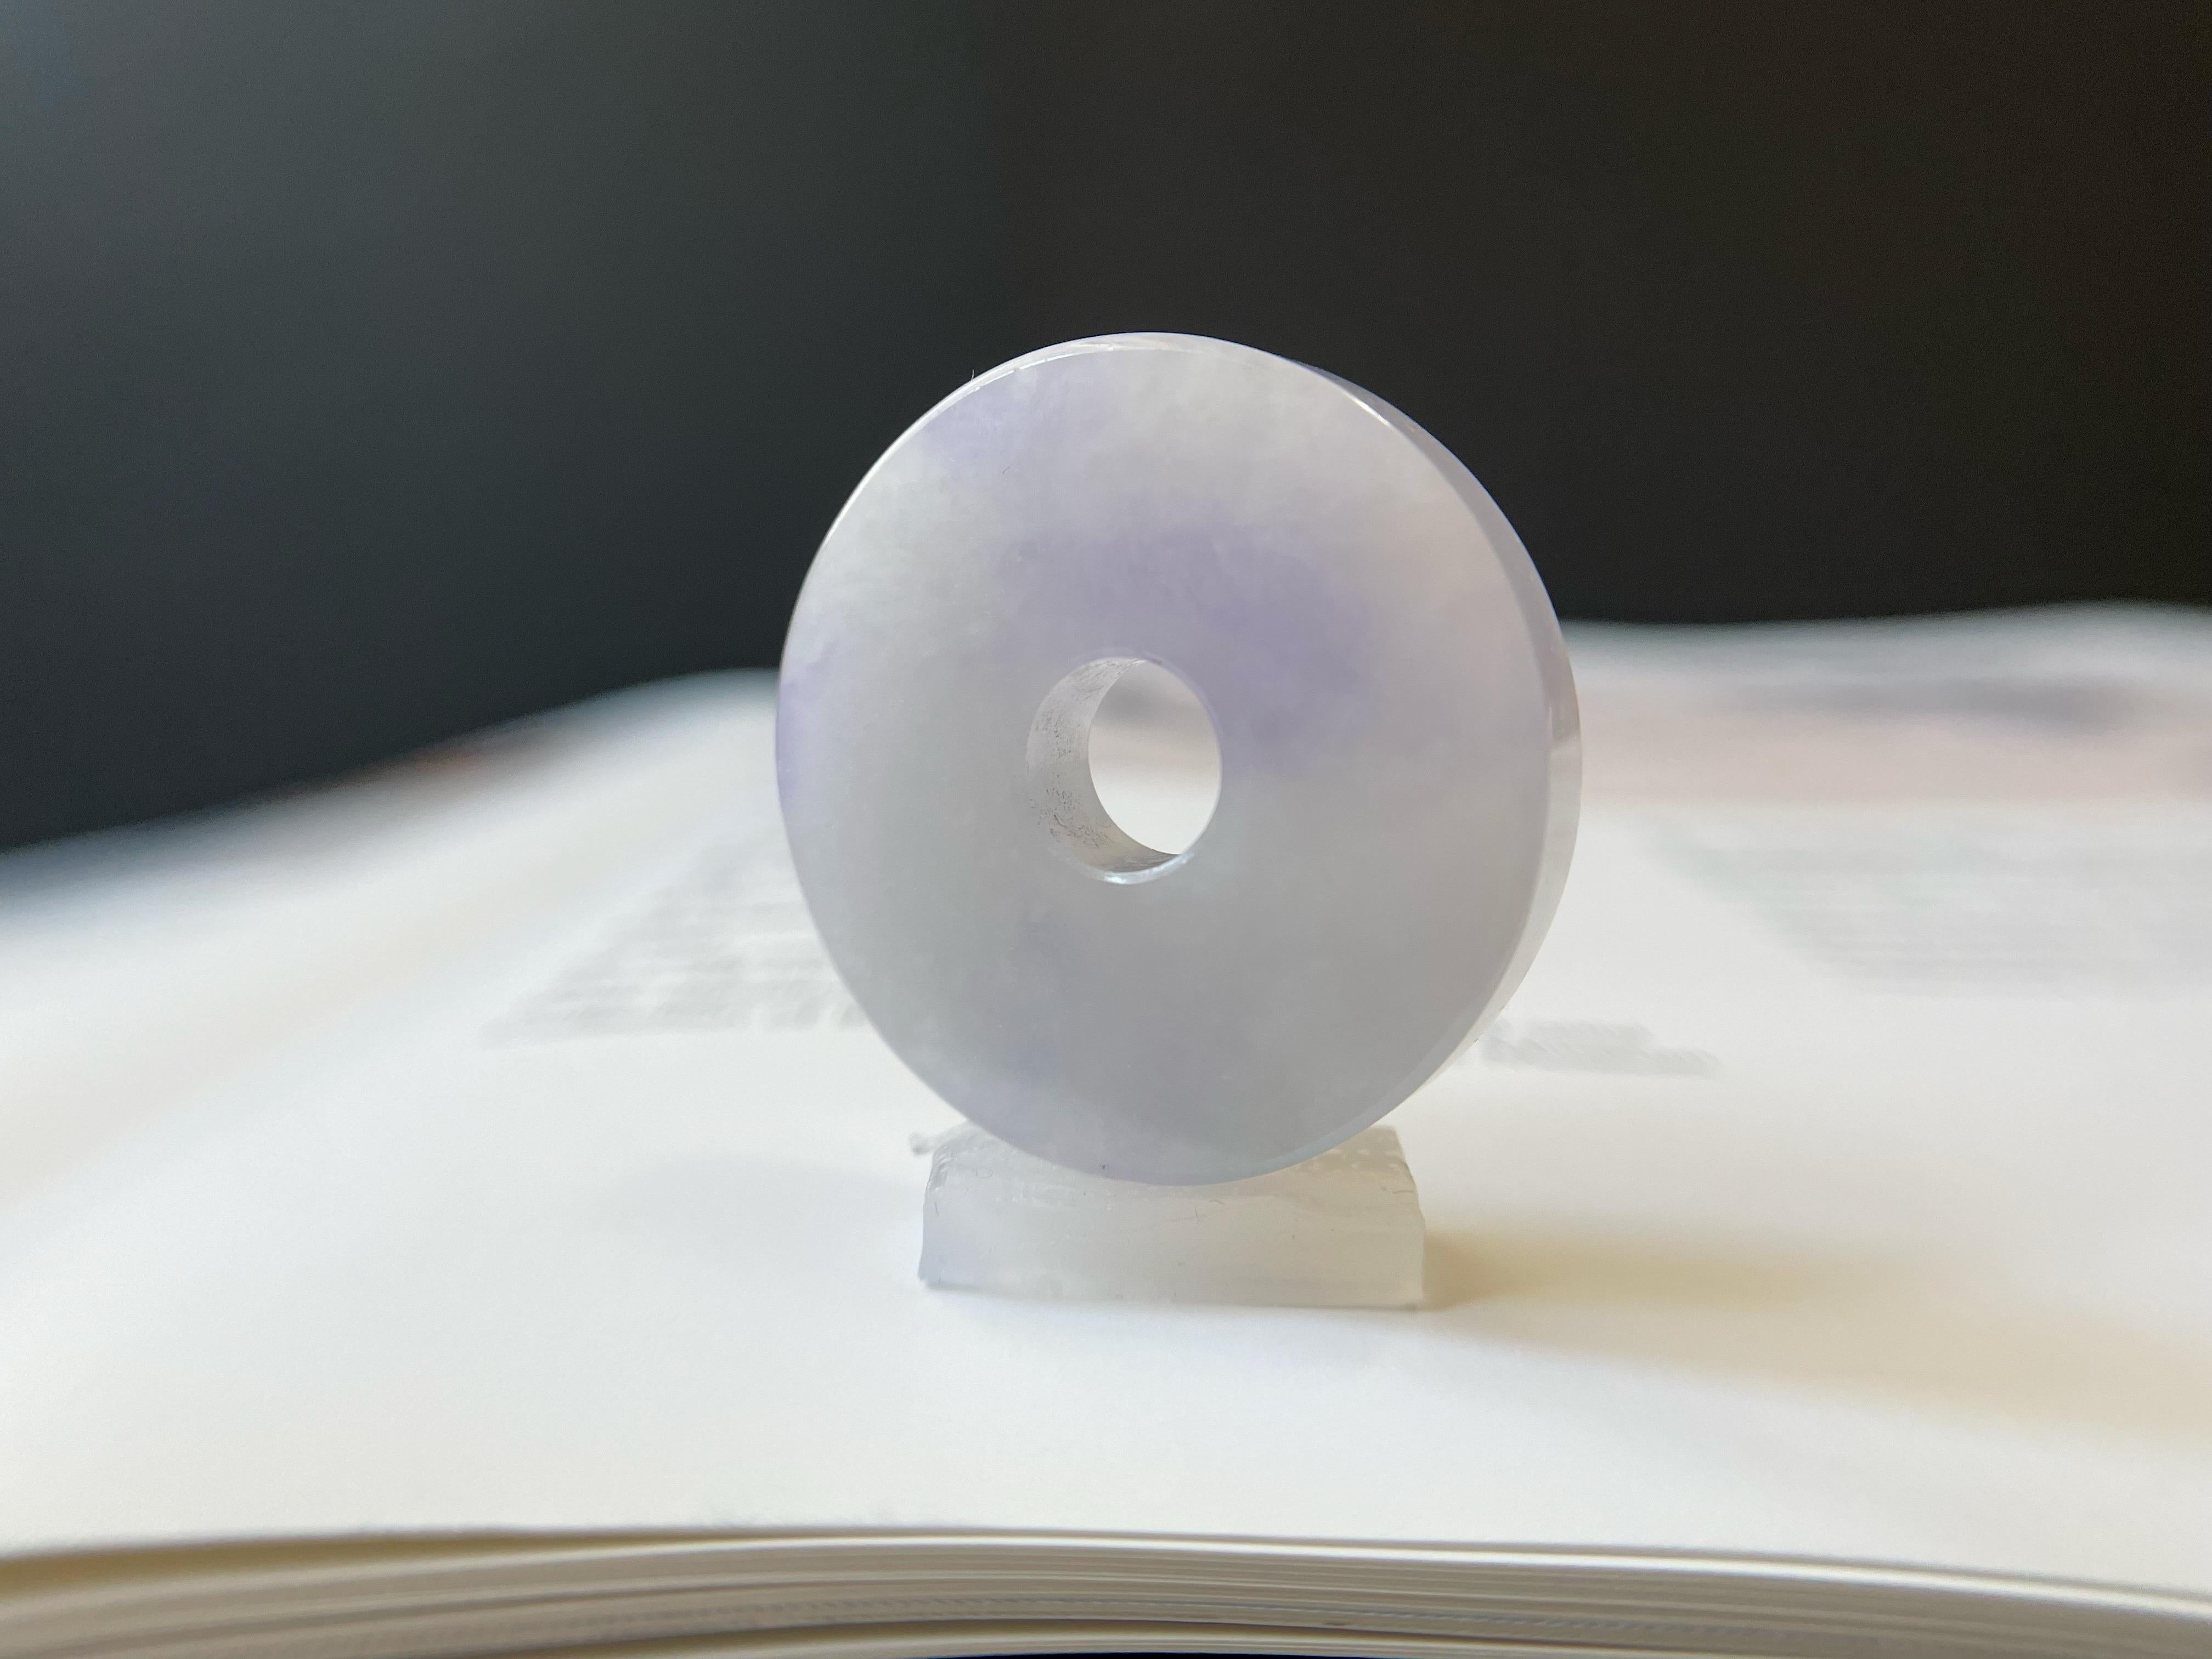 Wir stellen unseren exquisiten Lavendel-Donut-Jadeit vor: ein atemberaubendes Stück 100% natürlicher, unbehandelter und ungefärbter Typ-A-Jadeit aus Myanmar. Dieser einzigartige Edelstein wird Ihre Sammlung mit Sicherheit verzaubern und